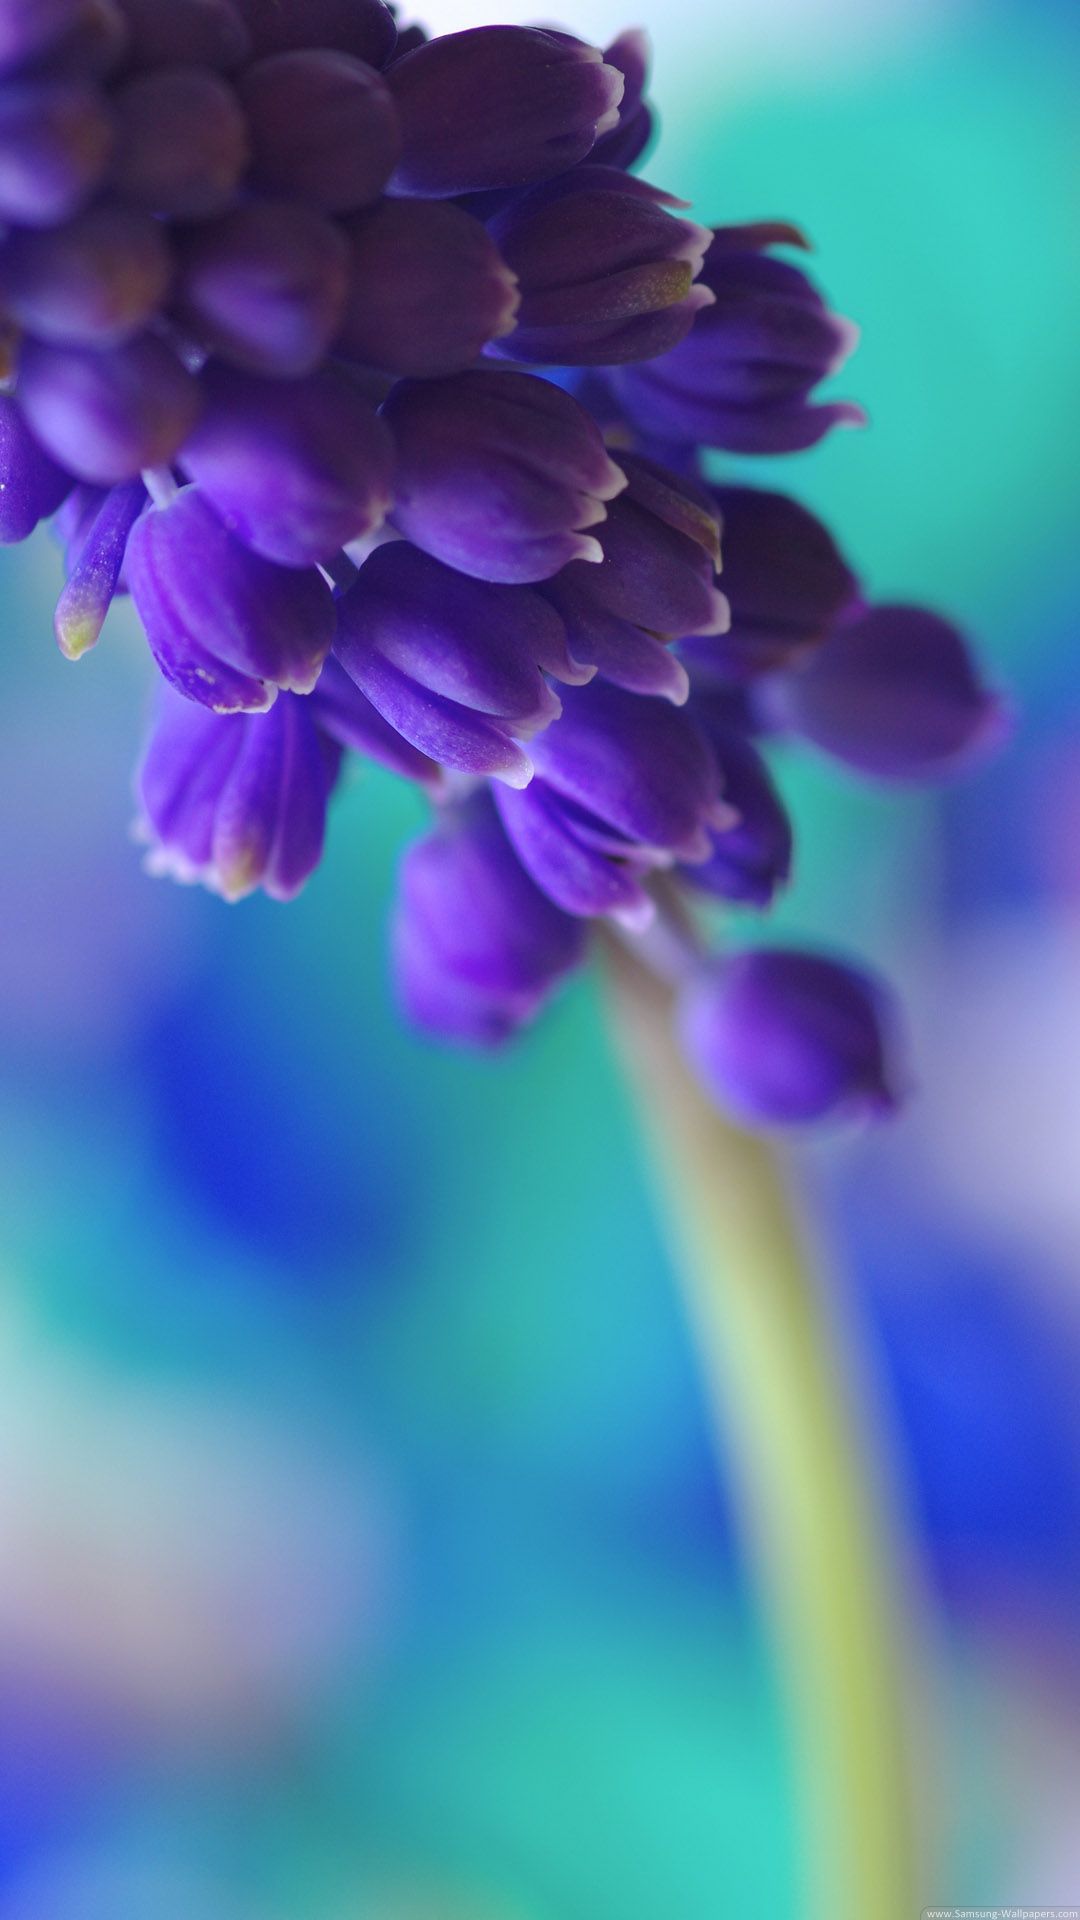 Flower Art Desktop Samsung Galaxy S4 1080x1920 Wallpaper ...